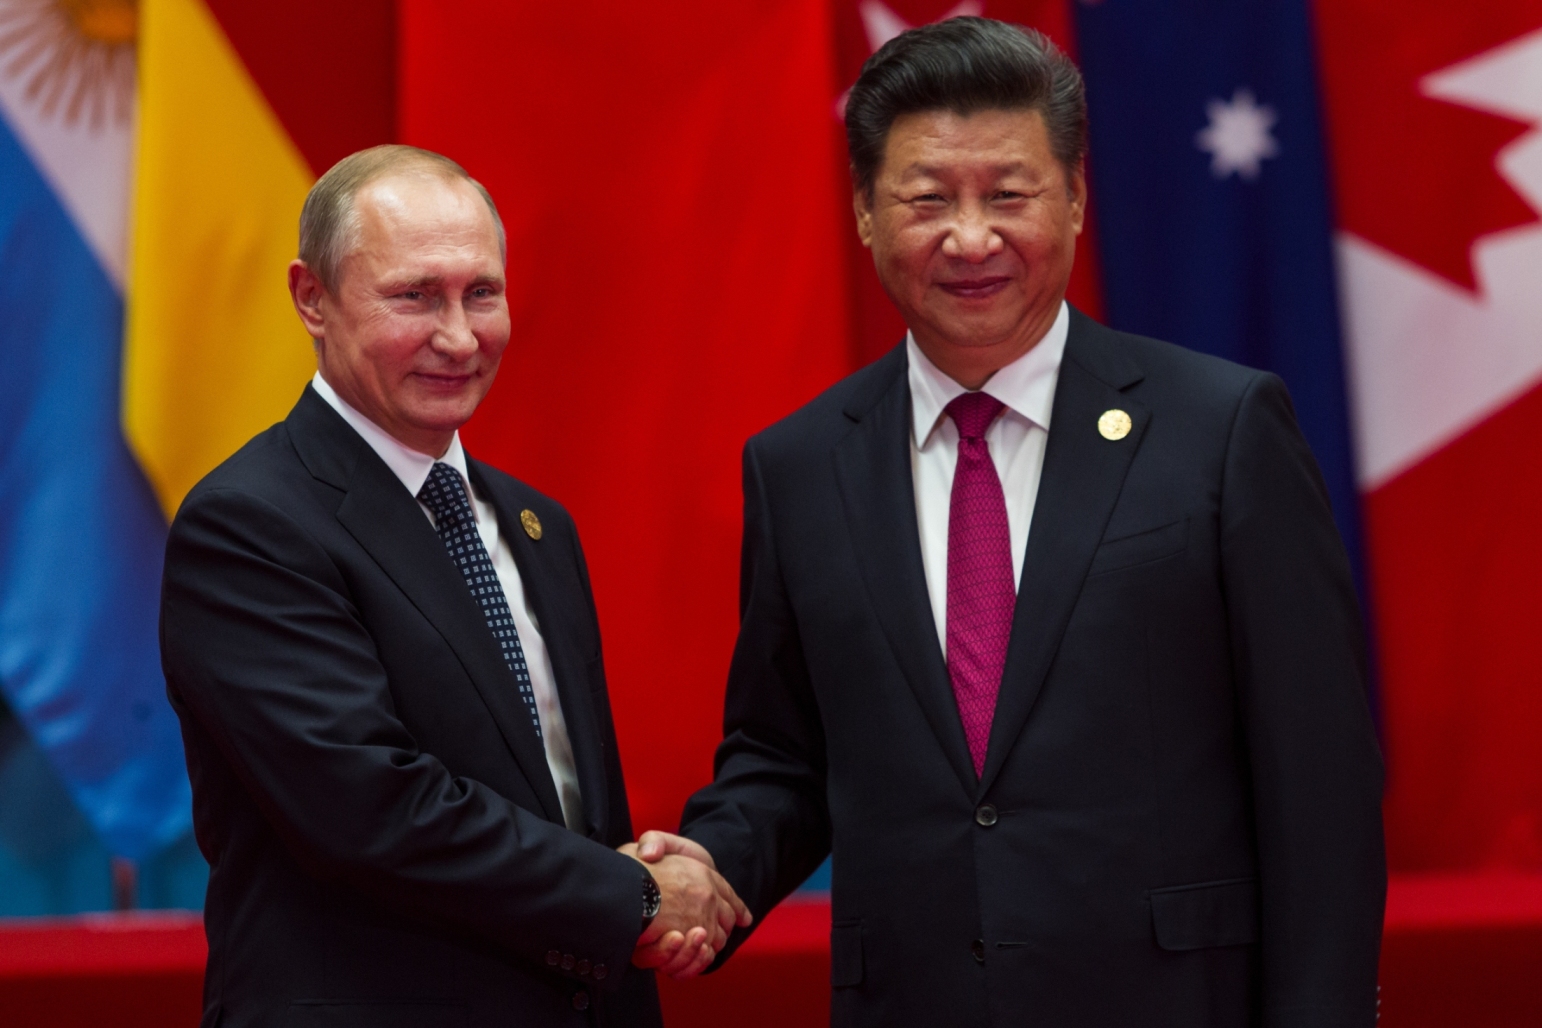 Vladimit Putin and Xi Jinping